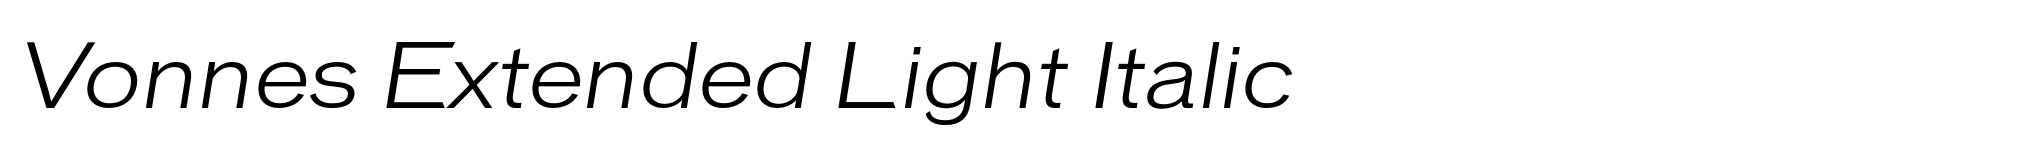 Vonnes Extended Light Italic image